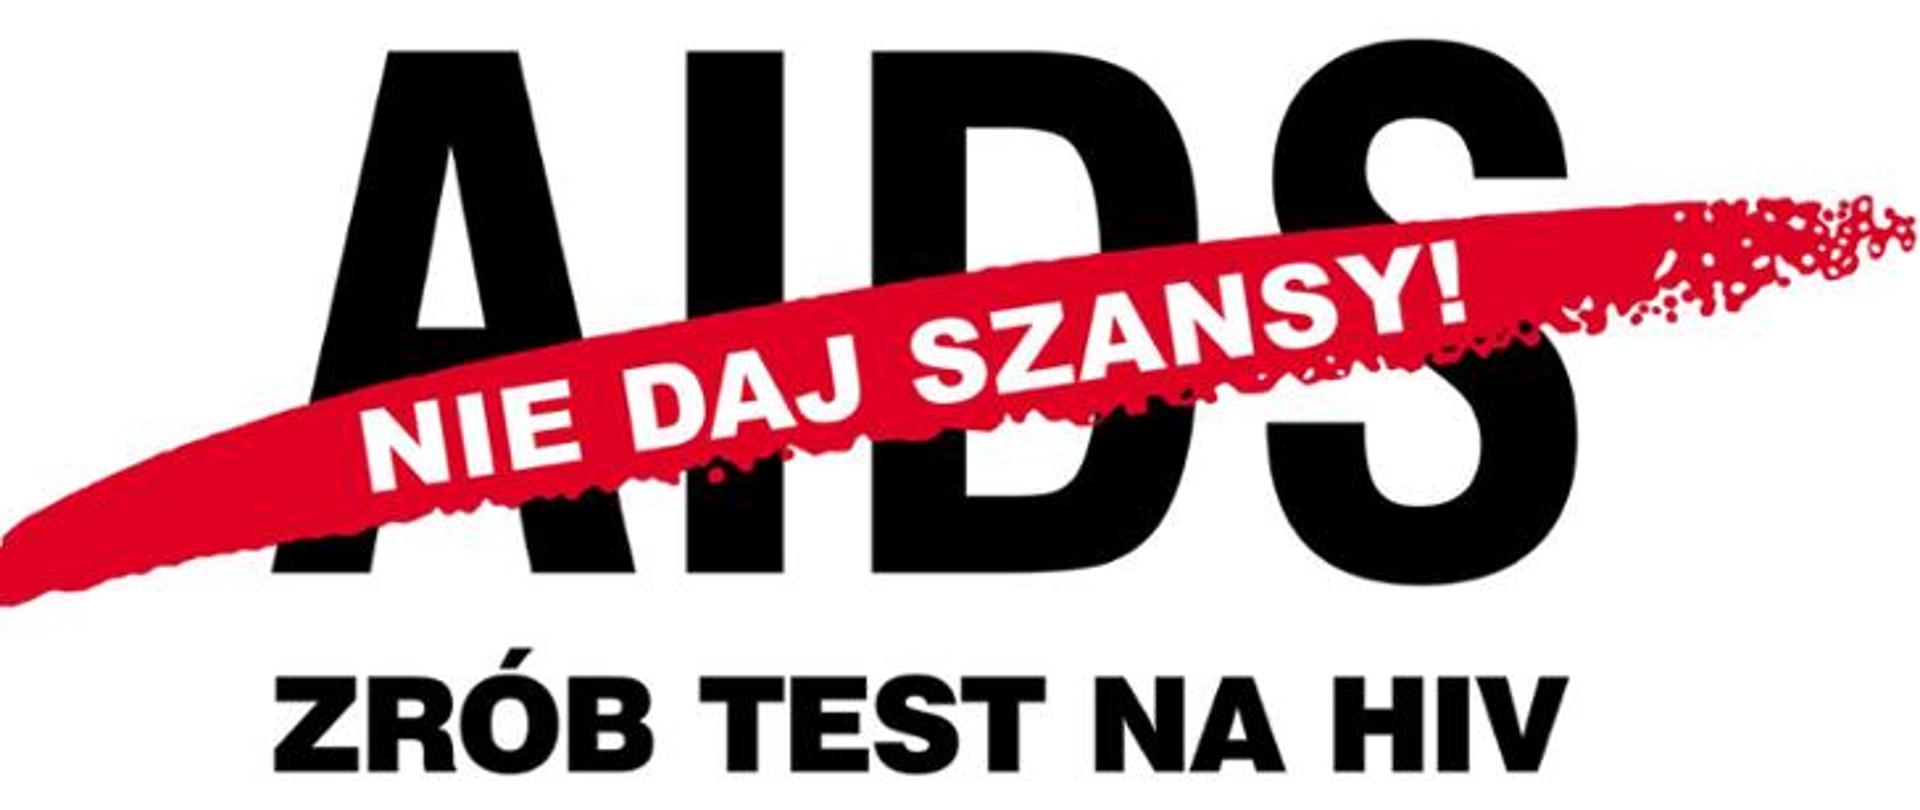 Na białym tle dużymi czarnymi literami napis: AIDS , ZRÓB TEST NA HIV. Przez napis AIDS na czerwonym tle w białym kolorze napis: NIE DAJ SZANSY!